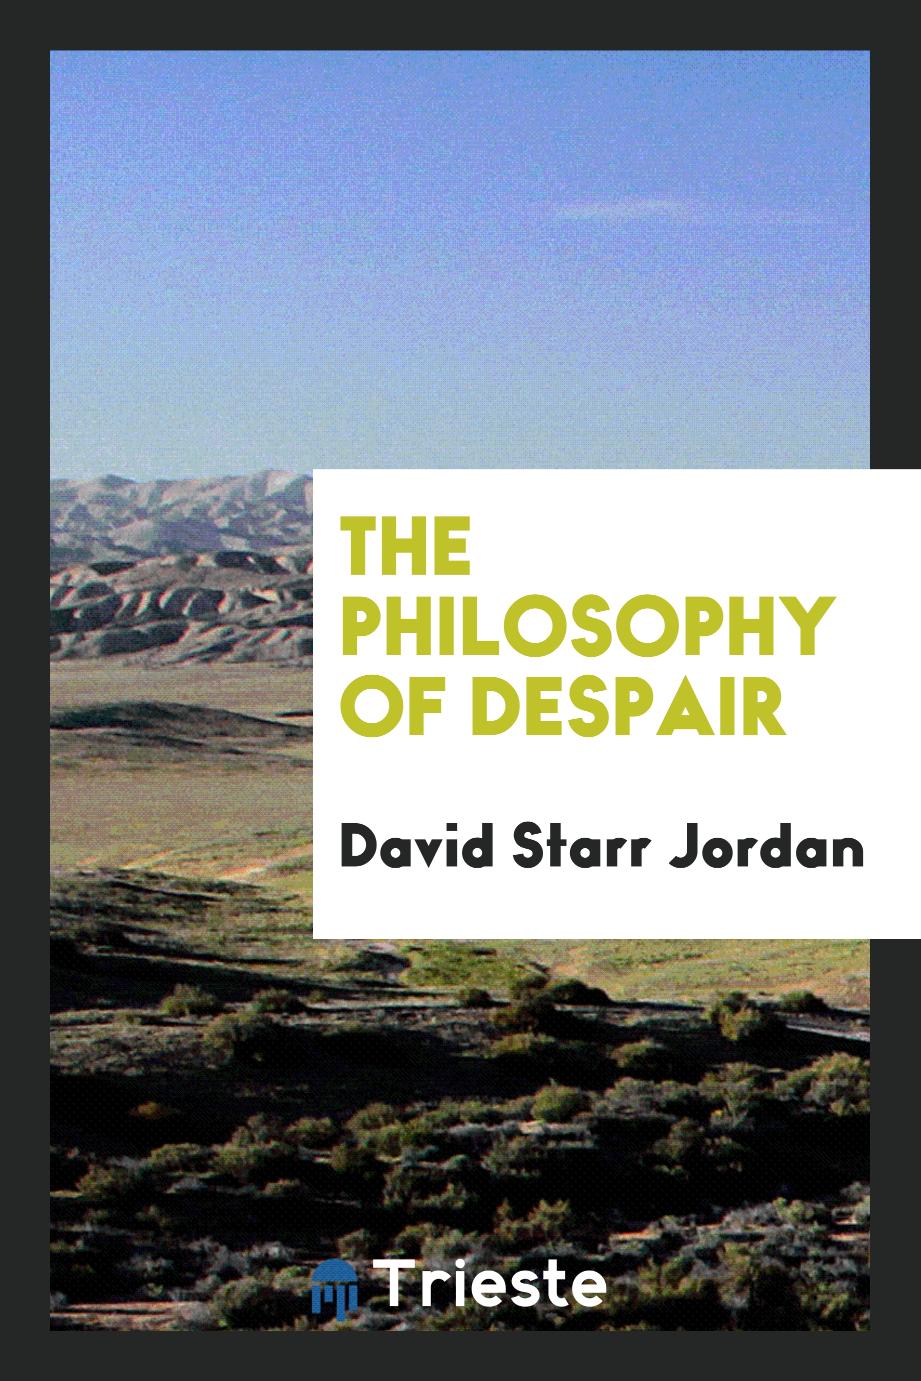 The Philosophy of Despair